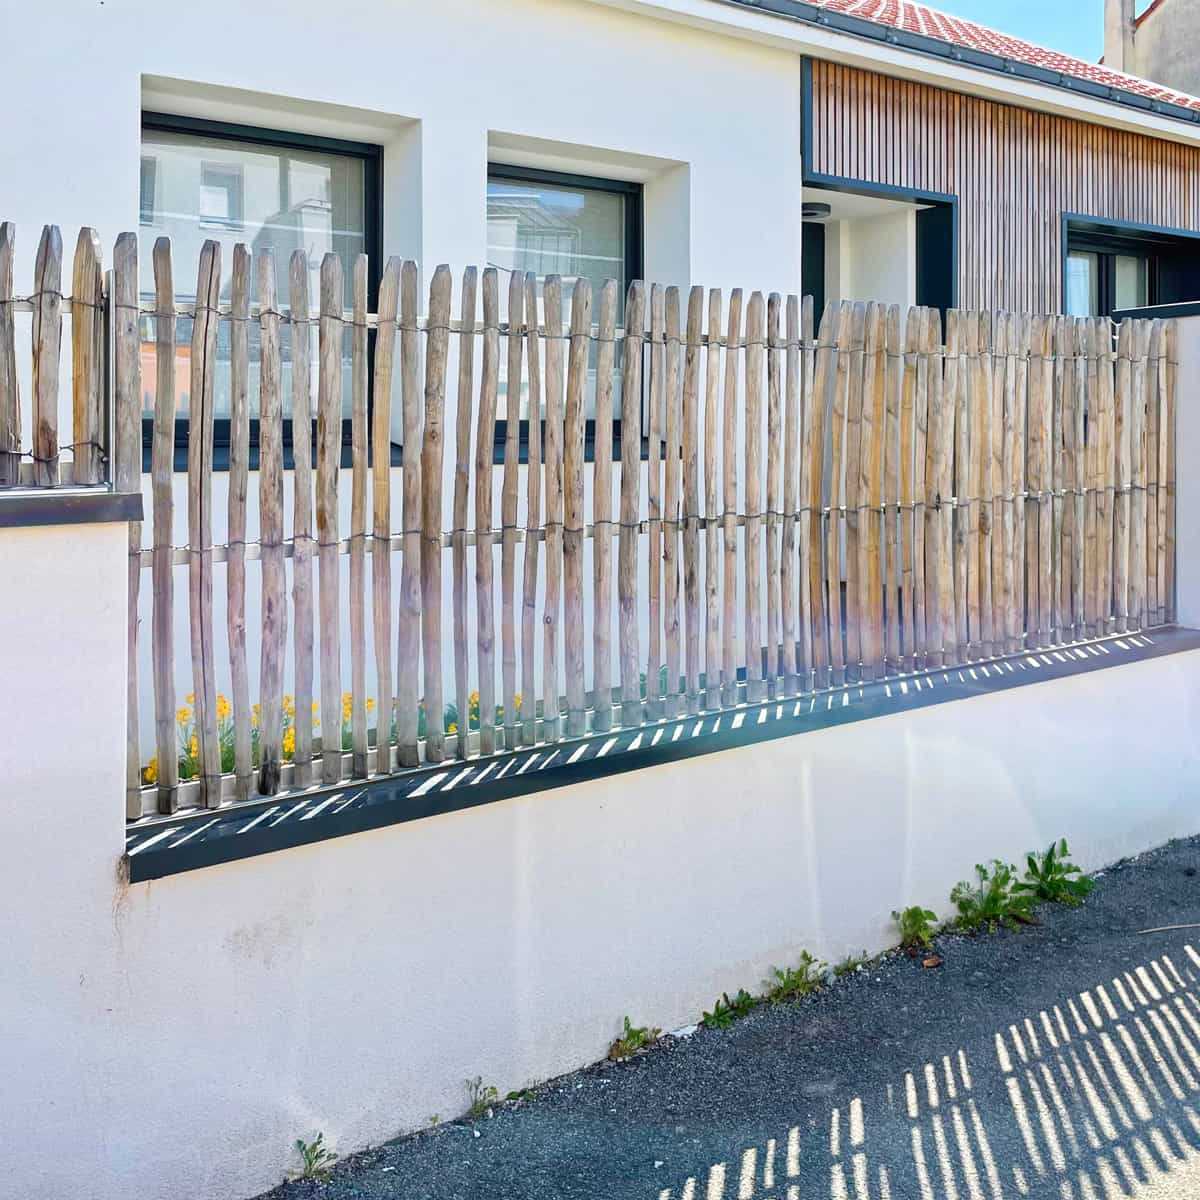 Ganivelle en châtaignier pour une clôture naturelle - Ligerio